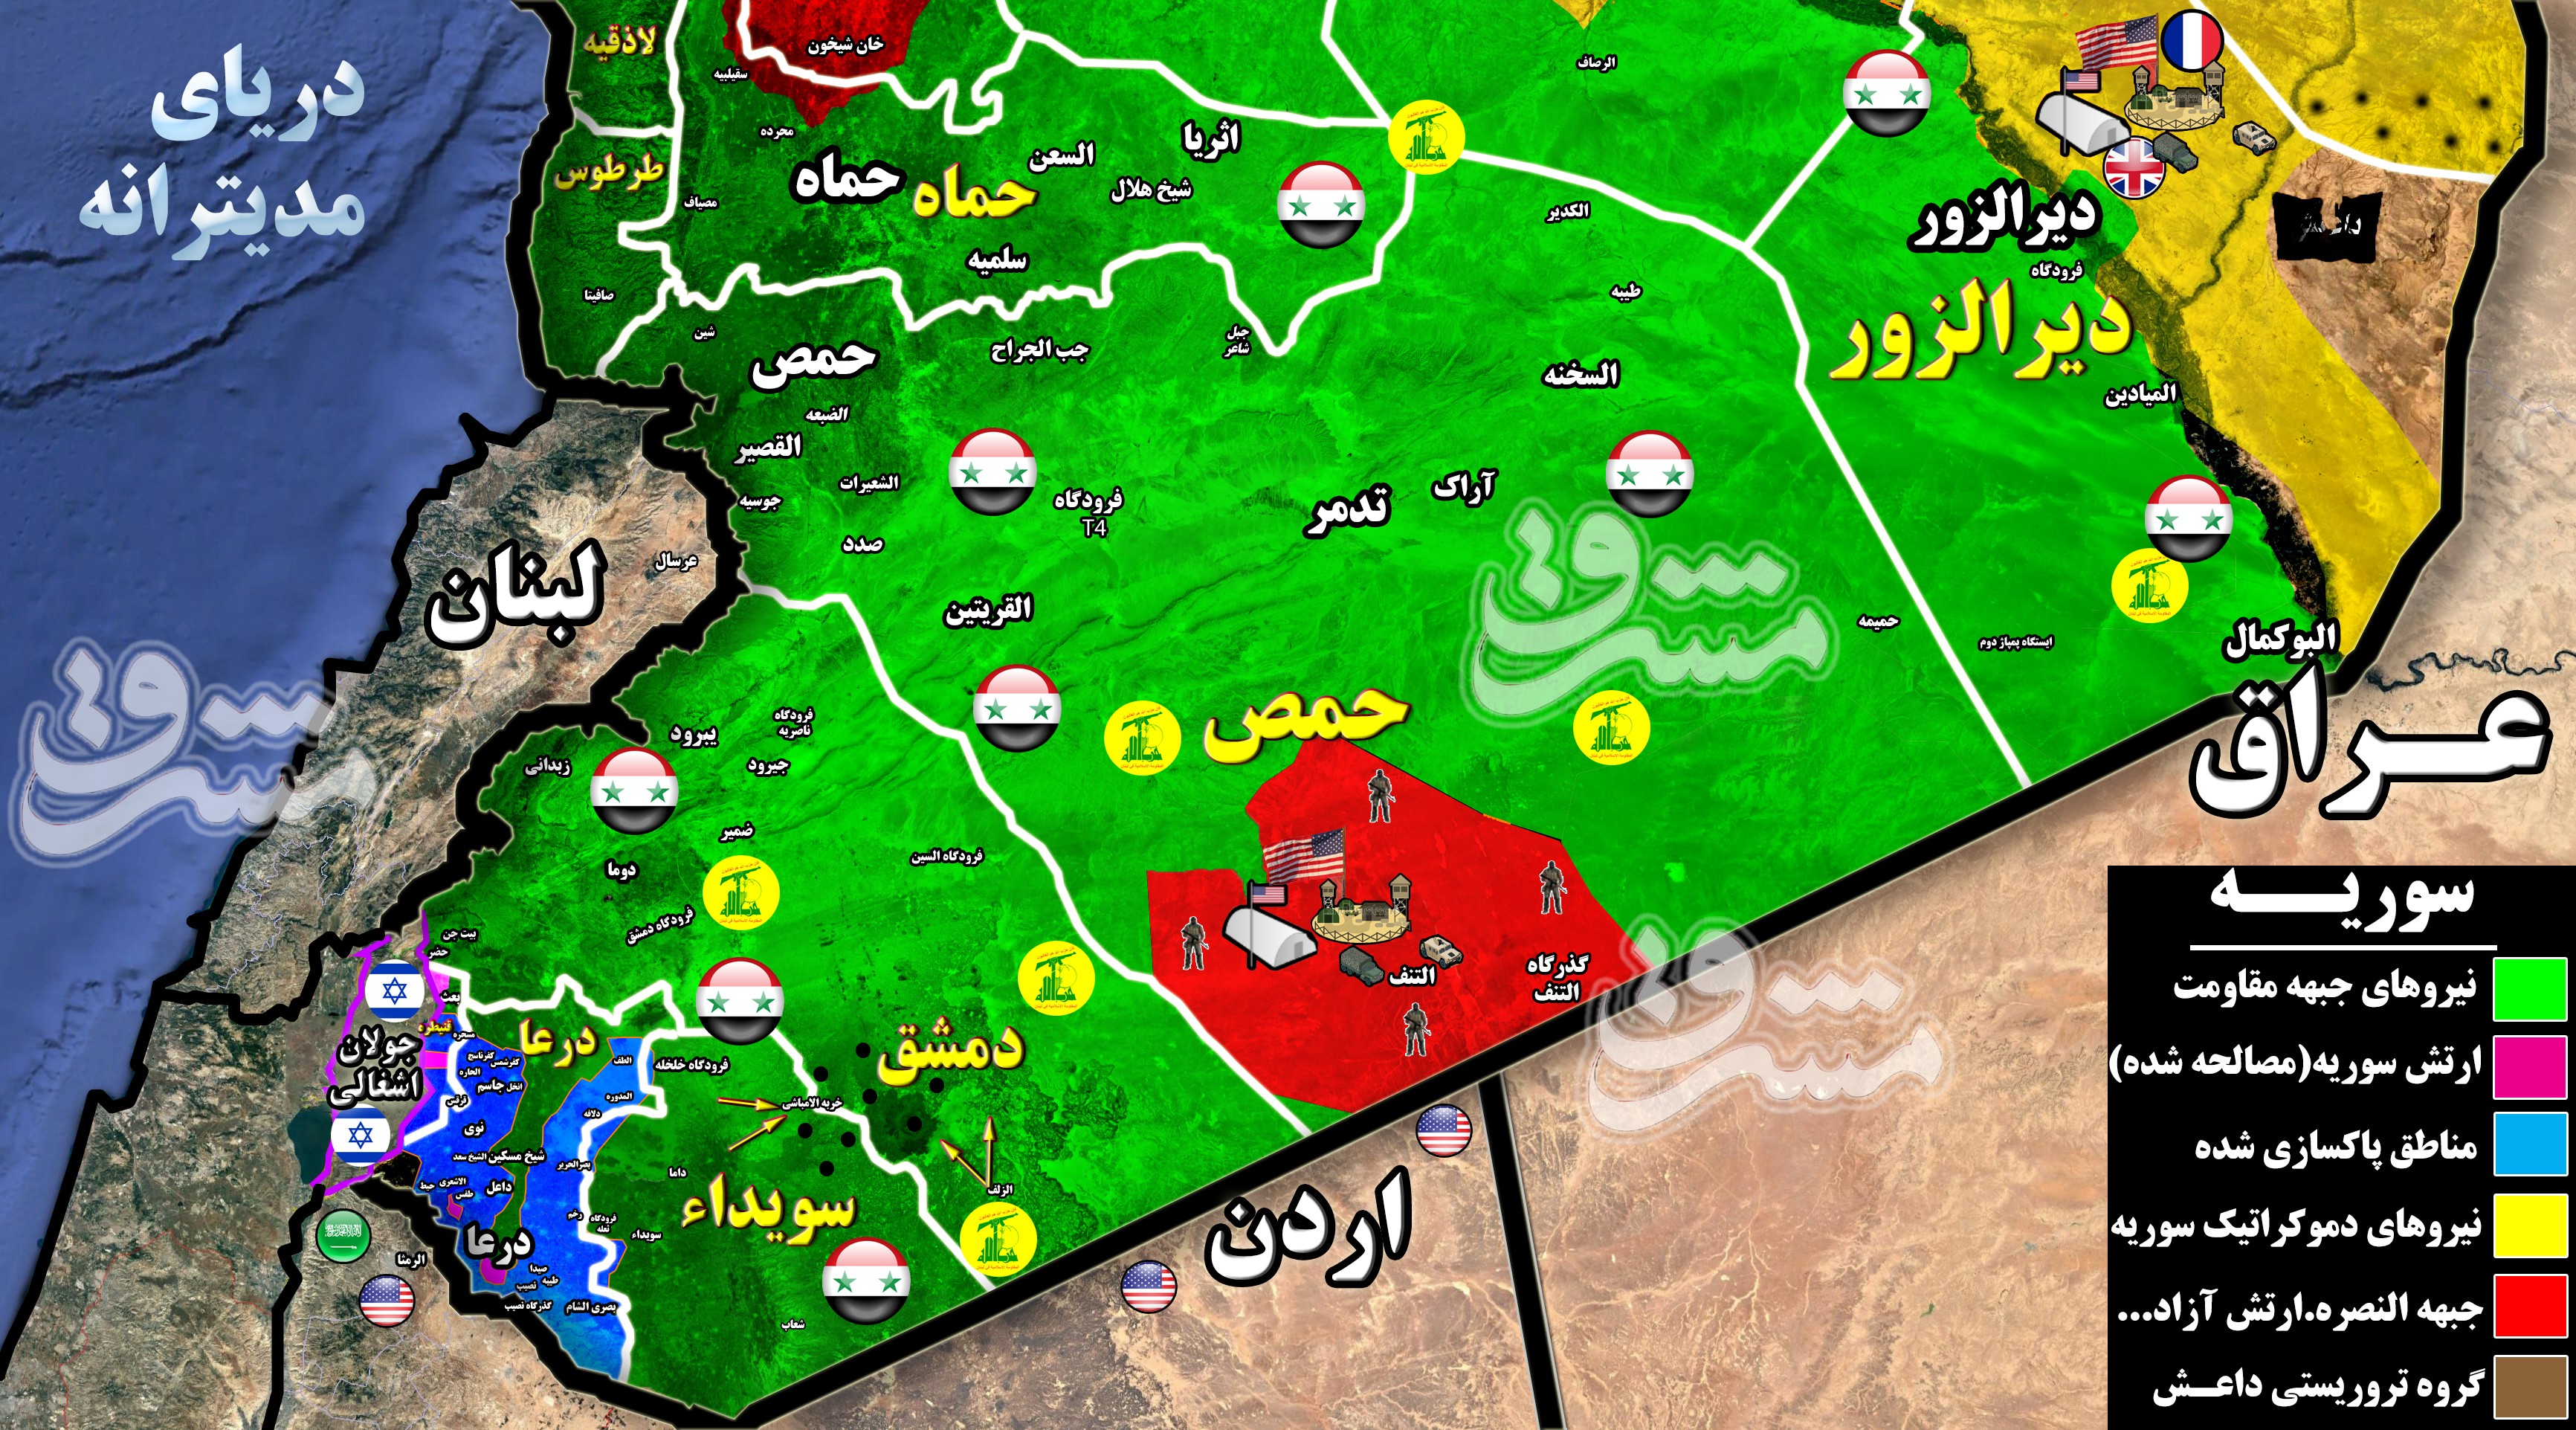 2304142 - آخرین تحولات میدانی جنوب سوریه؛ ۹۸ درصد استان درعا به کنترل نیروهای سوری درآمد + نقشه میدانی